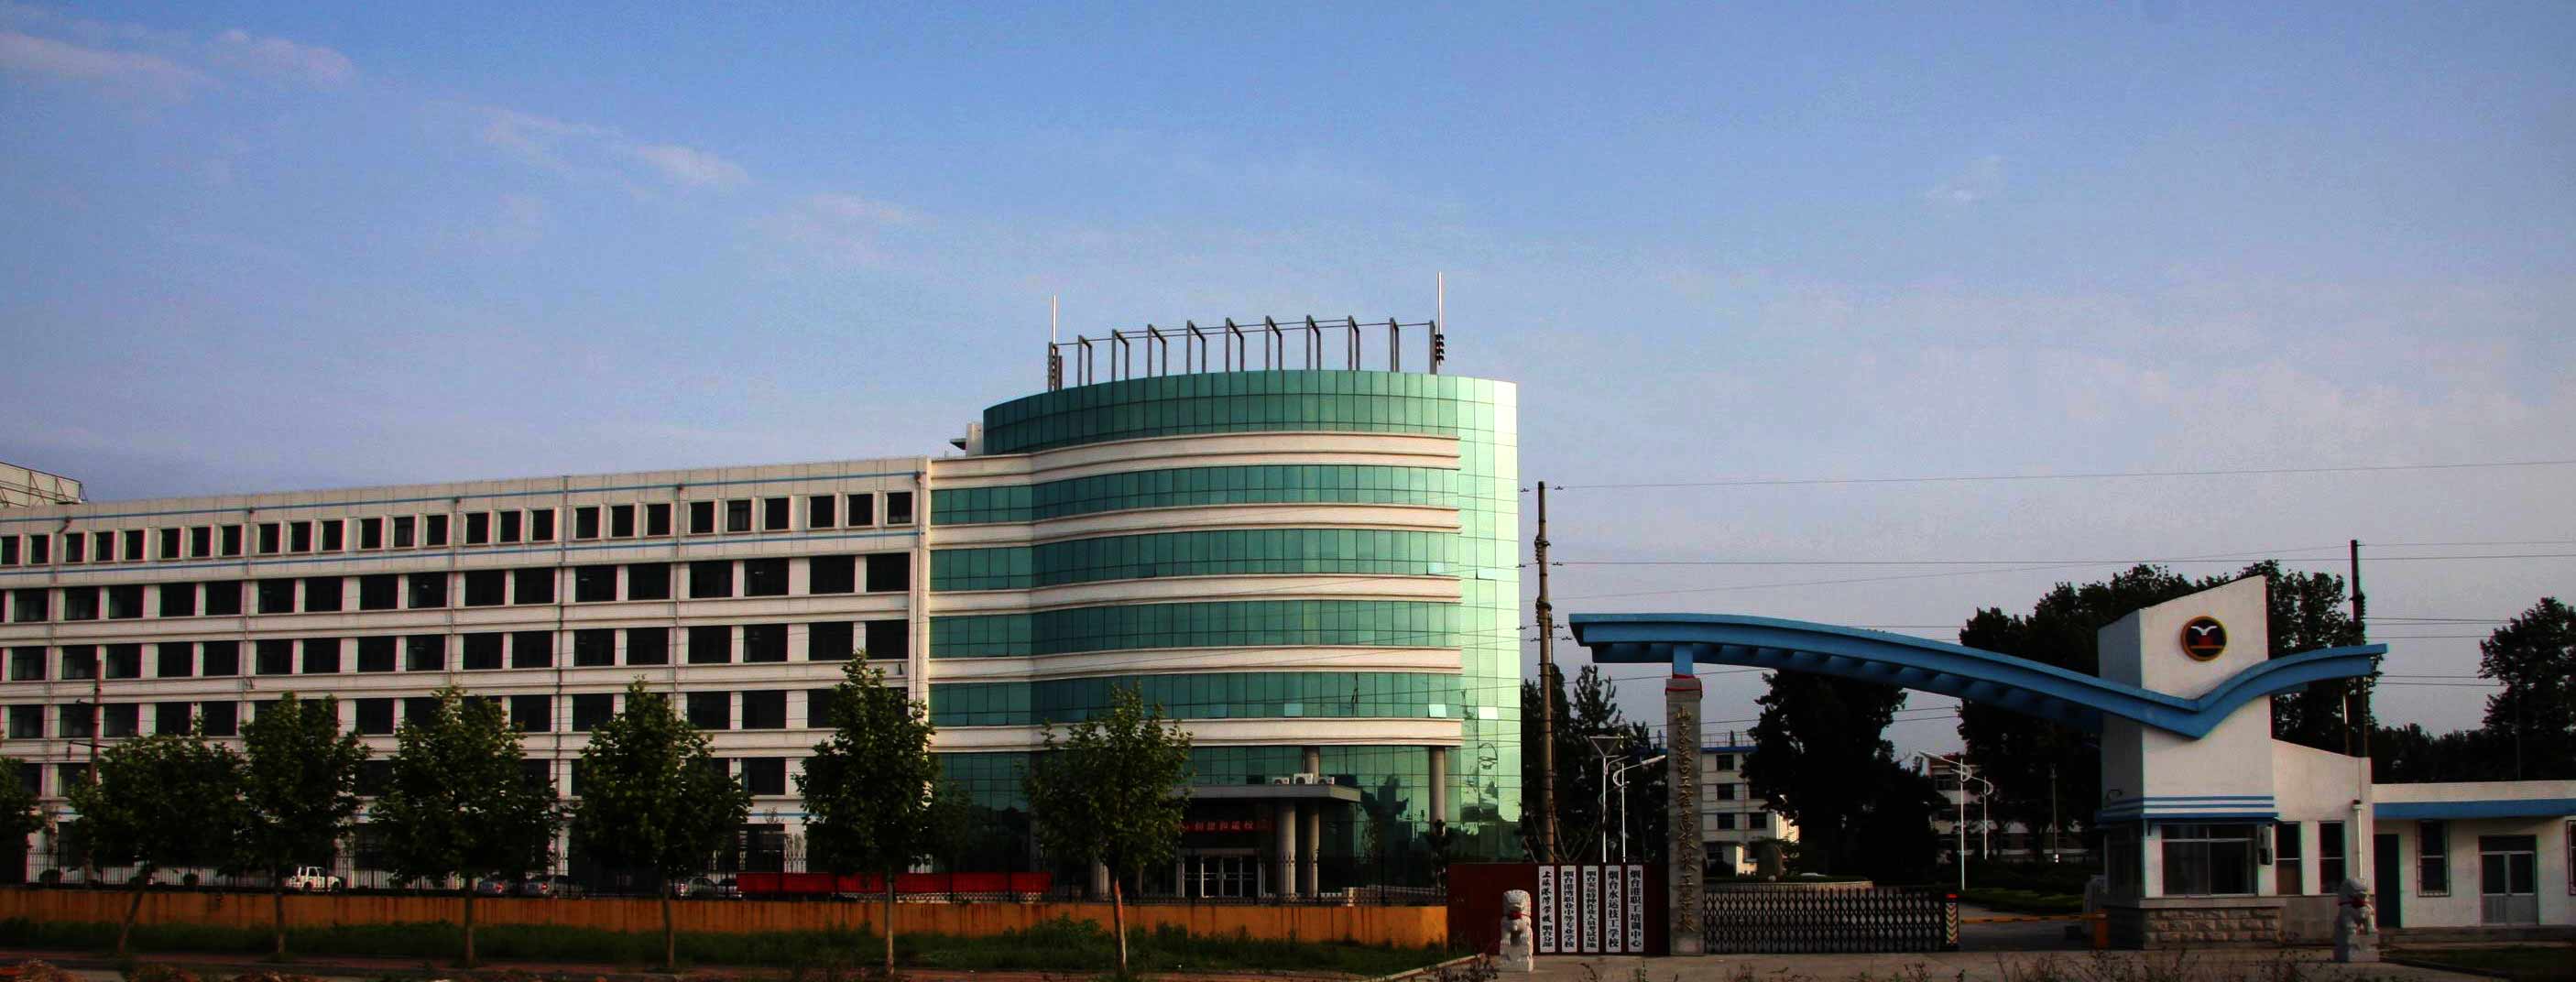 山东港口工程高级技工学校是烟台港集团公司所属的国家级重点高级